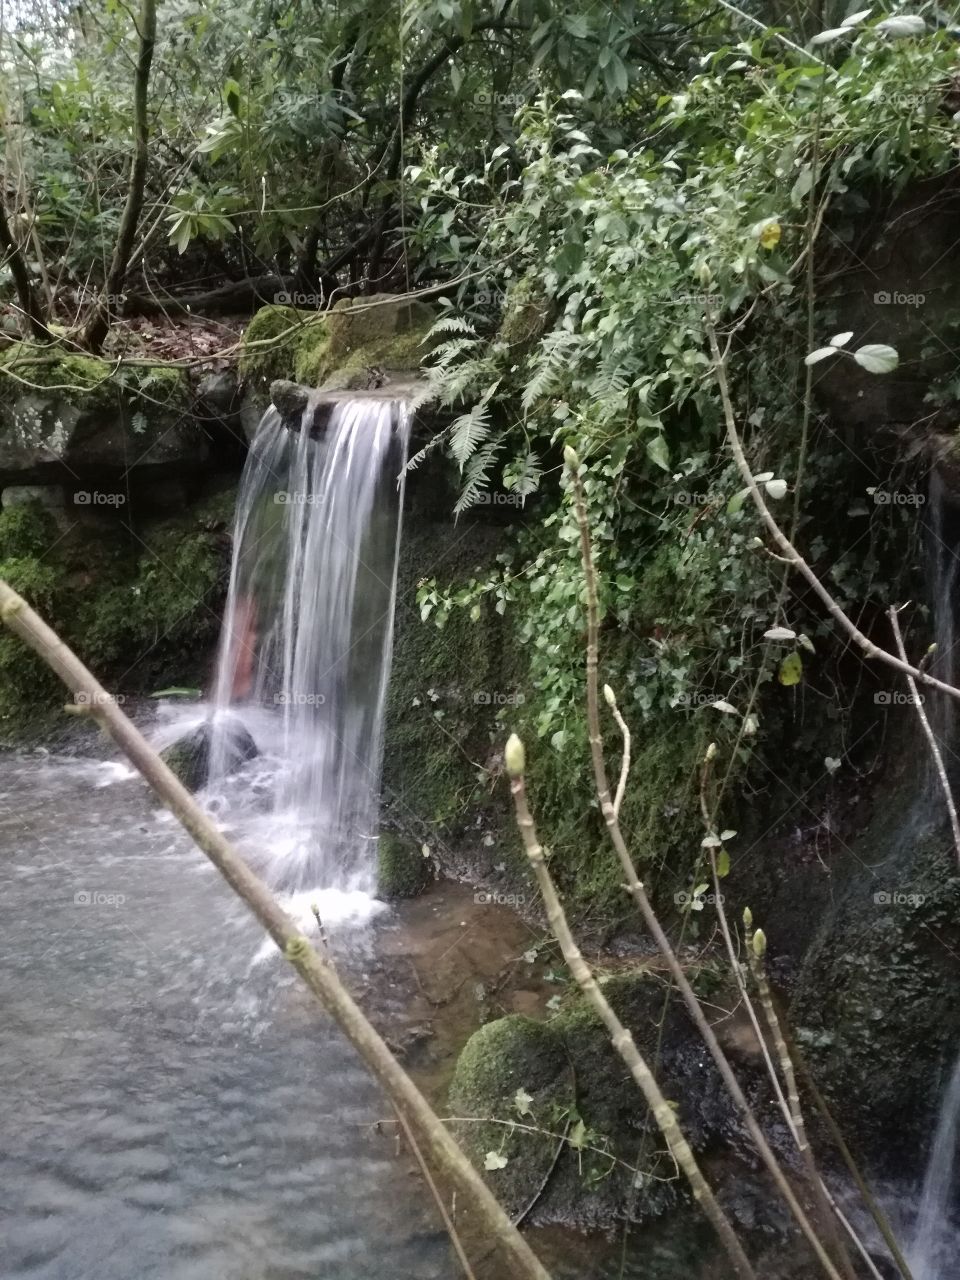 Spring waterfalls